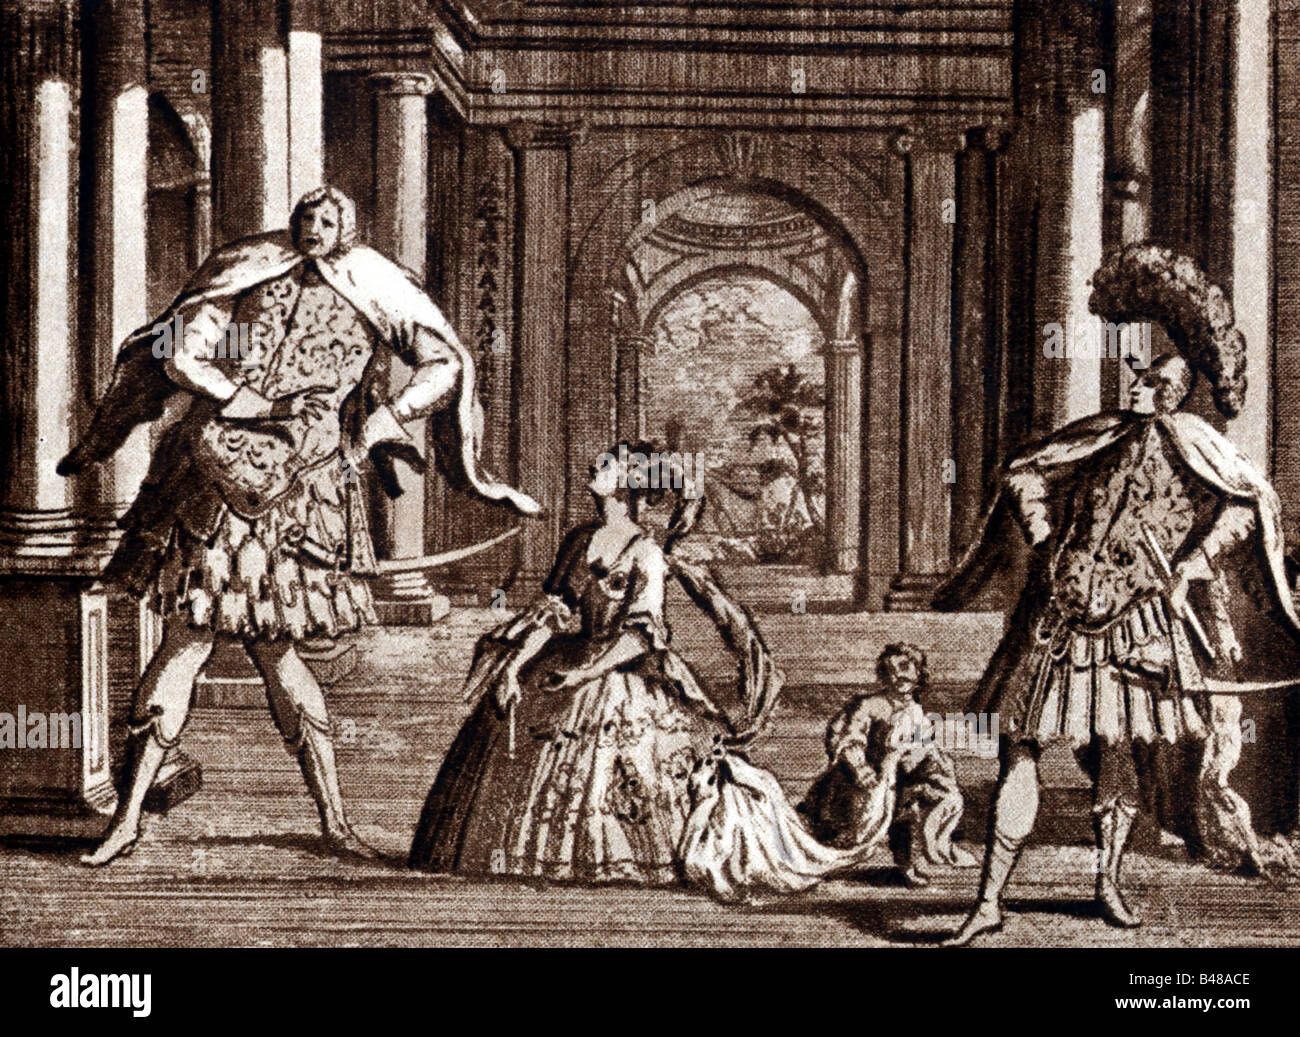 Handel, George Frideric, 23.2. 1685 - 14.4.1759, compositeur allemand, la satire de son opéra 'Giulio Cesare in Egitto', Londres, 1724, , n'a pas d'auteur de l'artiste pour être effacé Banque D'Images